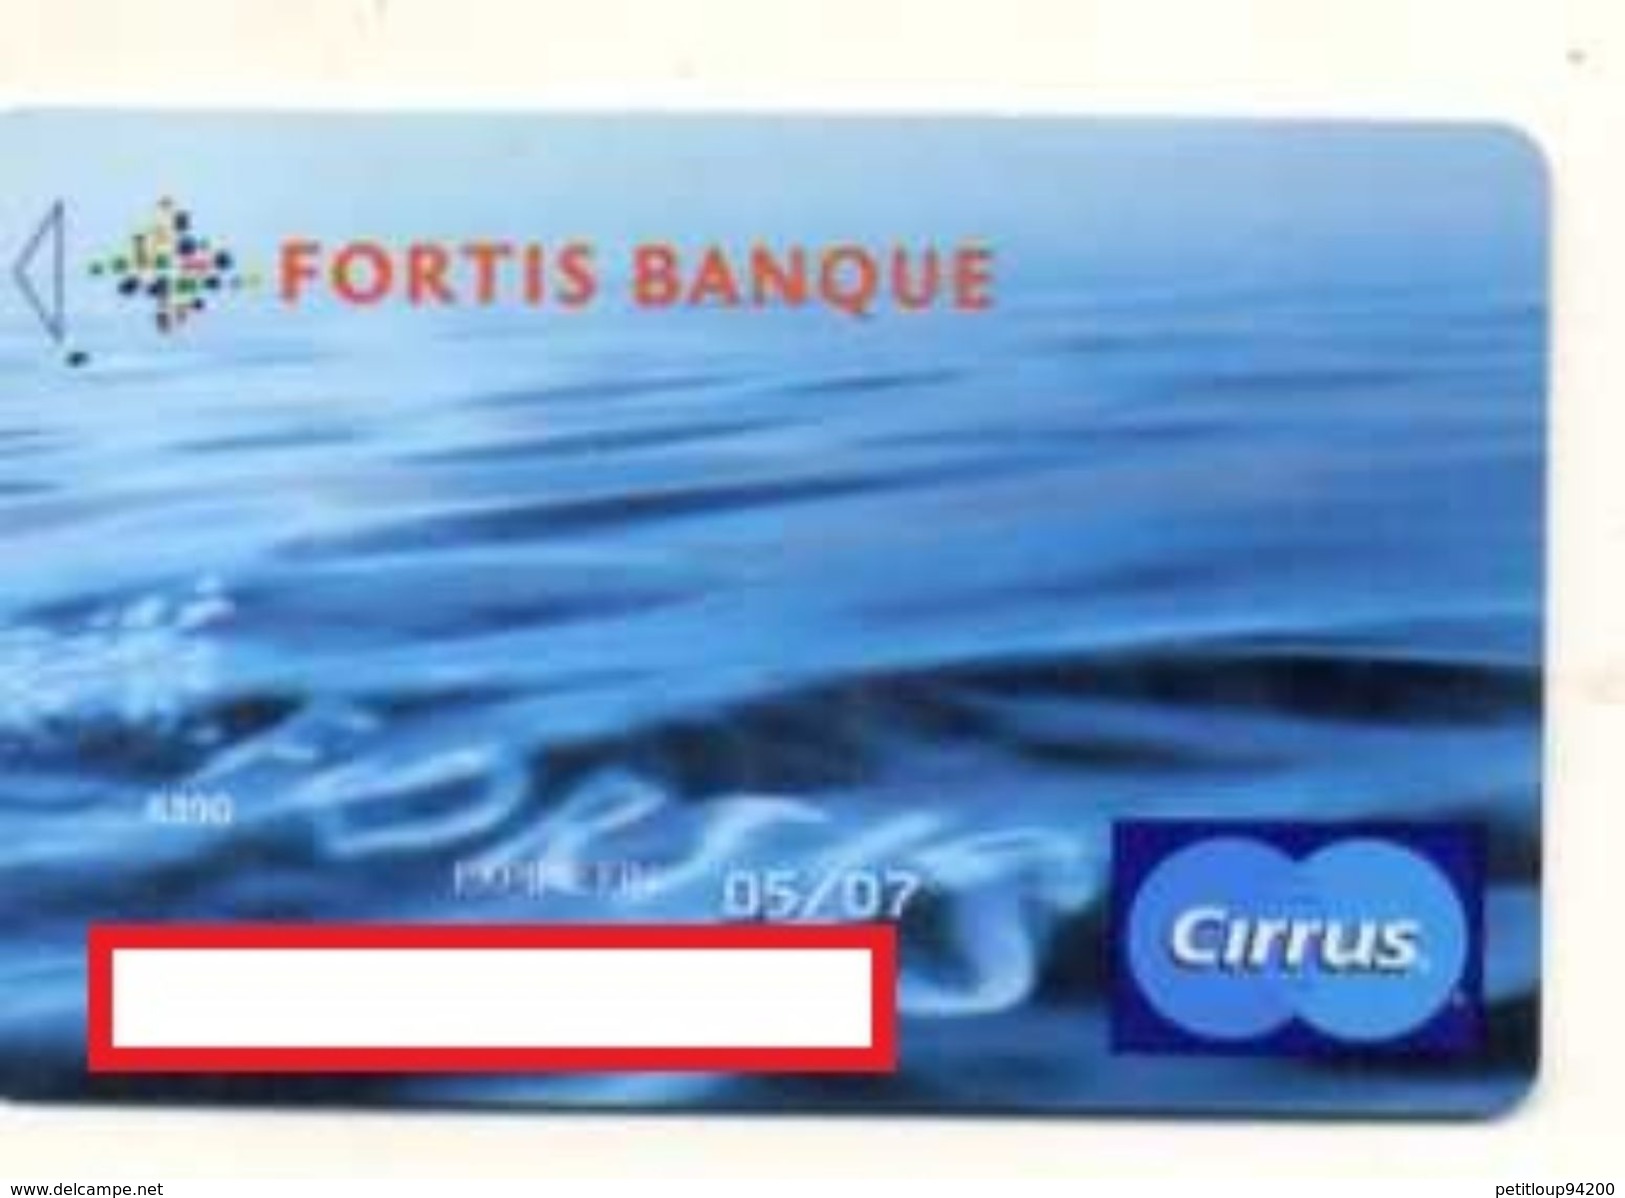 CARTE BANCAIRE FORTIS BANQUE Cirrus - Cartes Bancaires Jetables